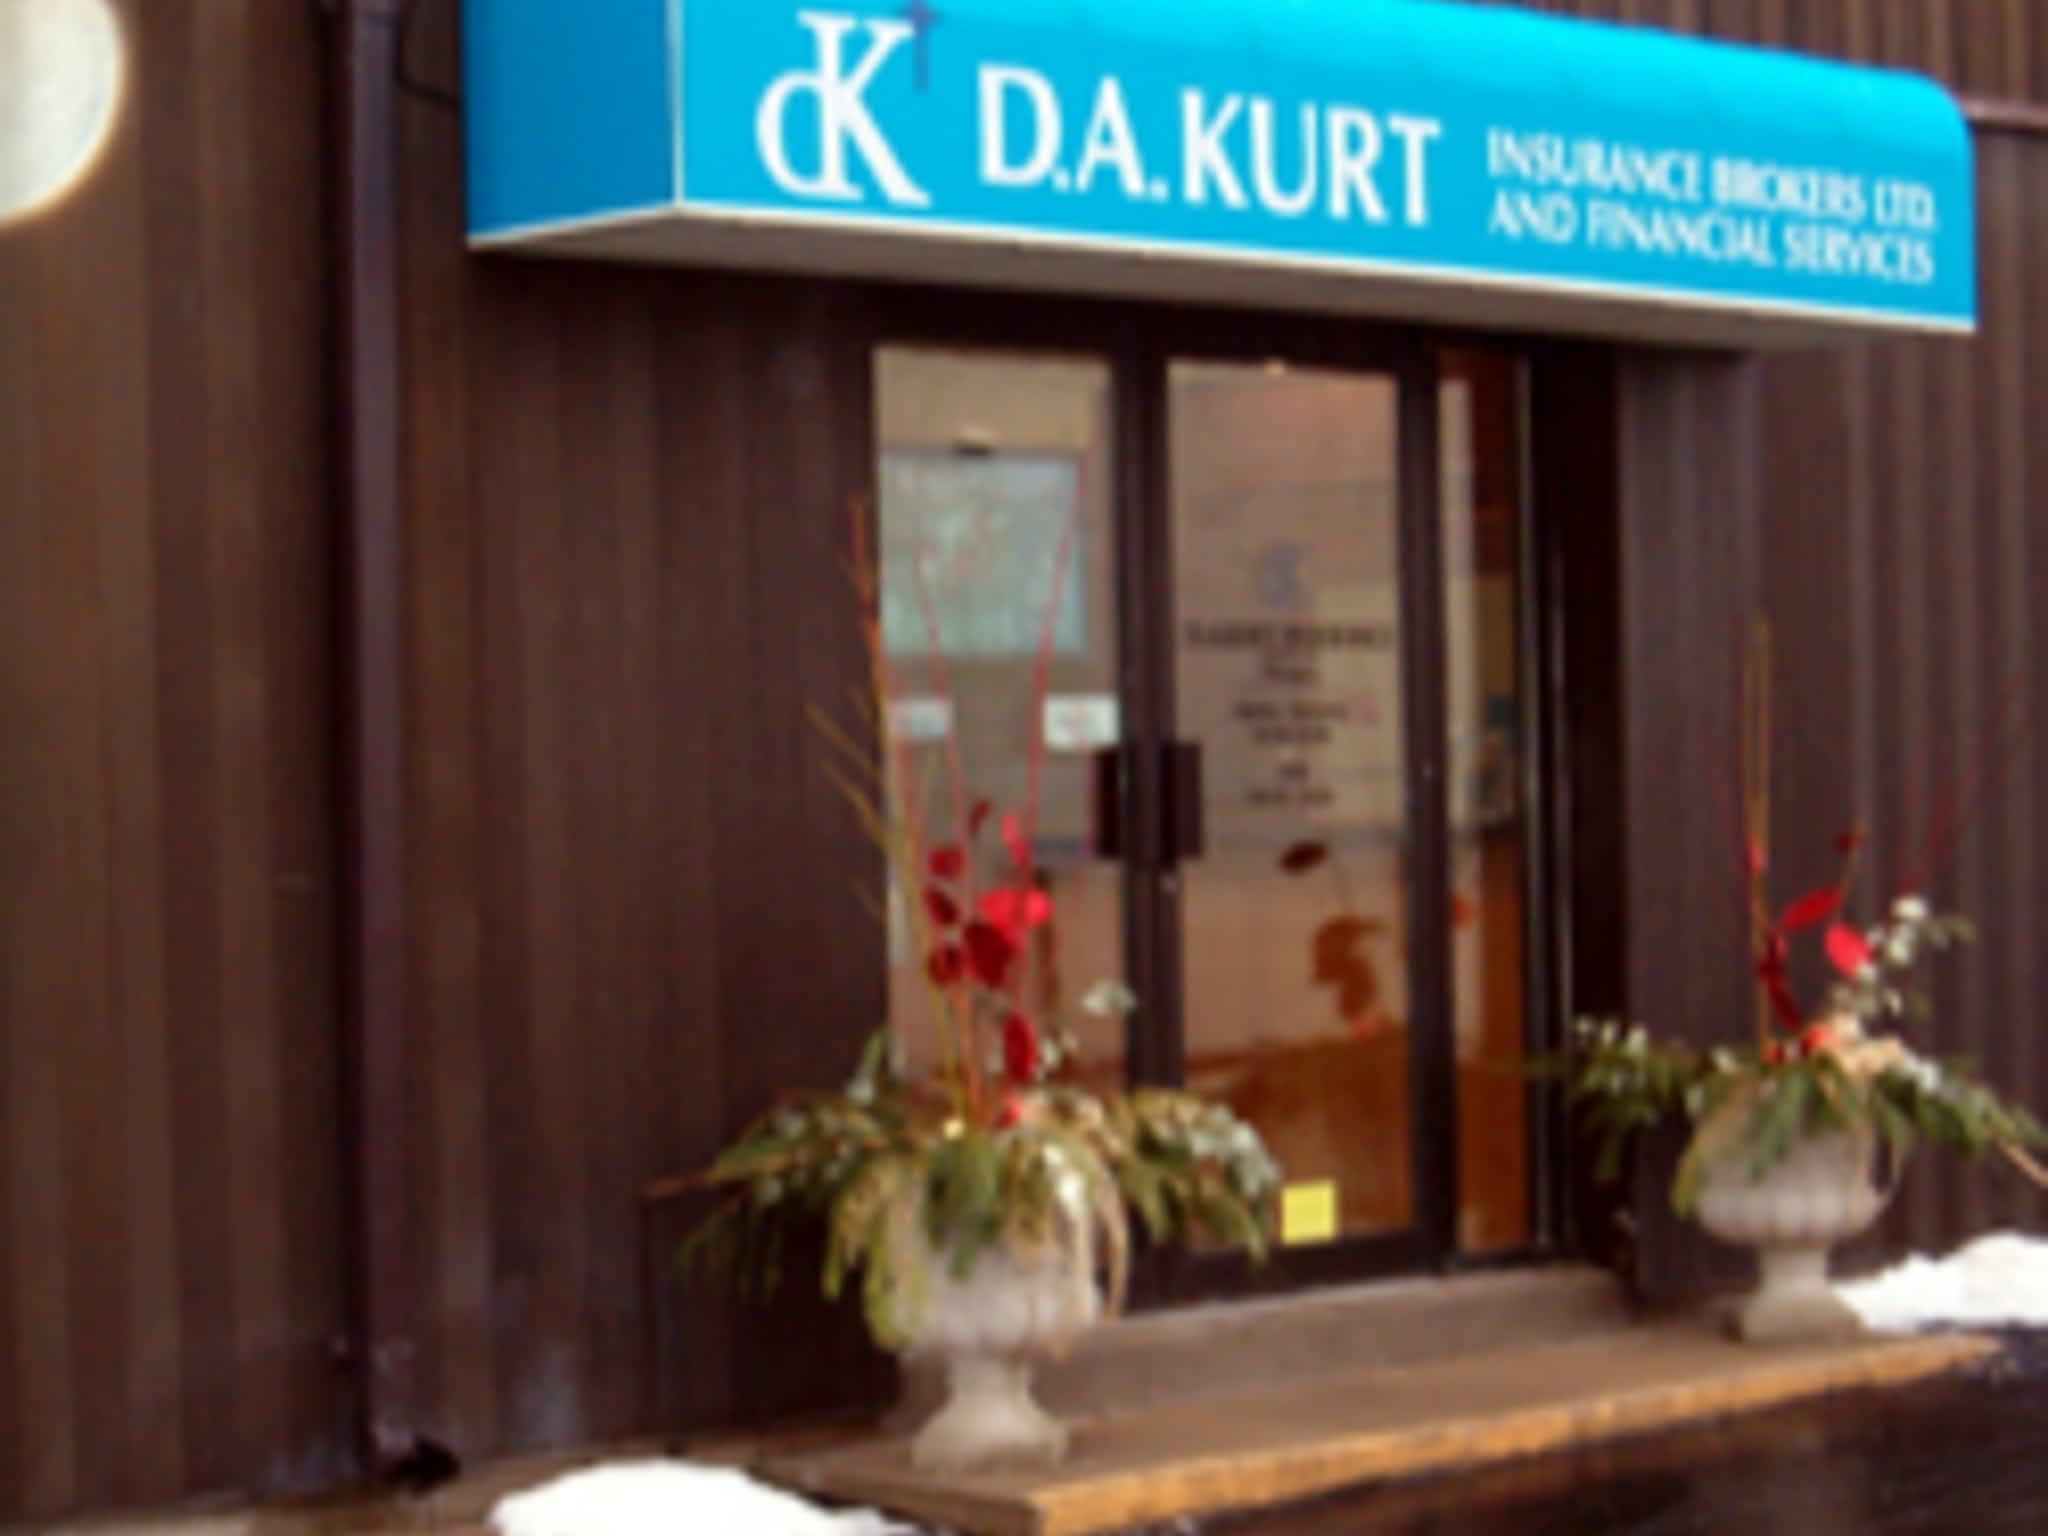 photo D A Kurt Insurance Broker Ltd